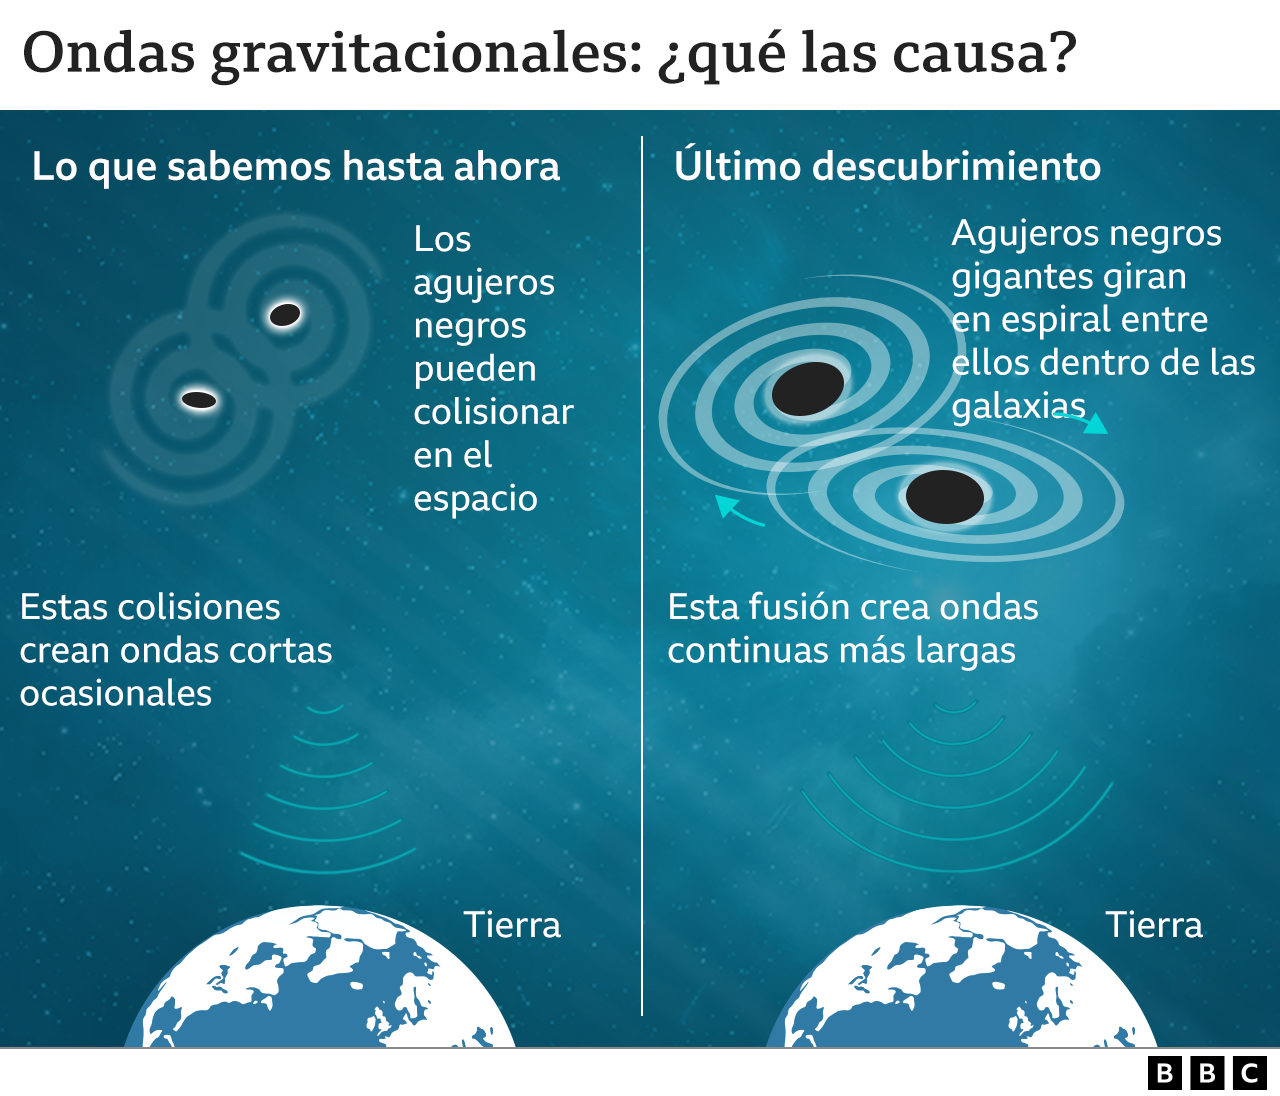 Gráfico que describe qué causa las ondas gravitacionales. 